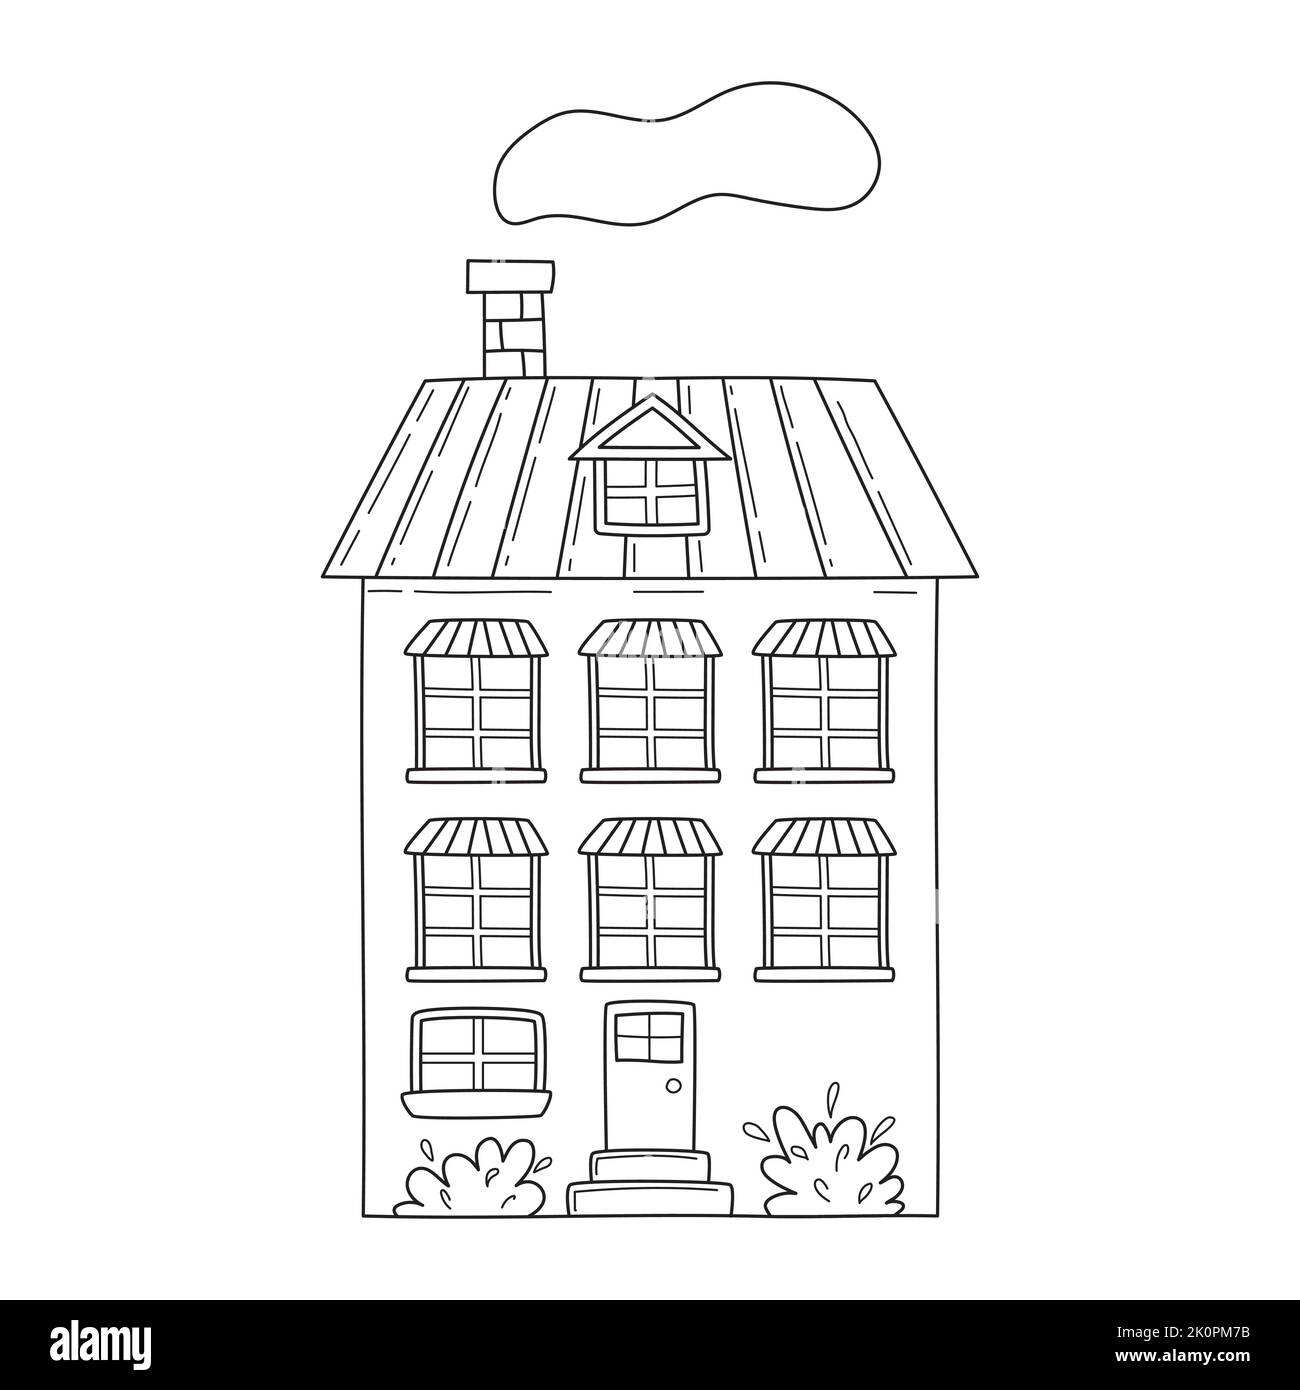 Carino semplice casa a tre piani in stile bozzetto. Illustrazione vettoriale in bianco e nero disegnata a mano isolata su sfondo bianco Illustrazione Vettoriale